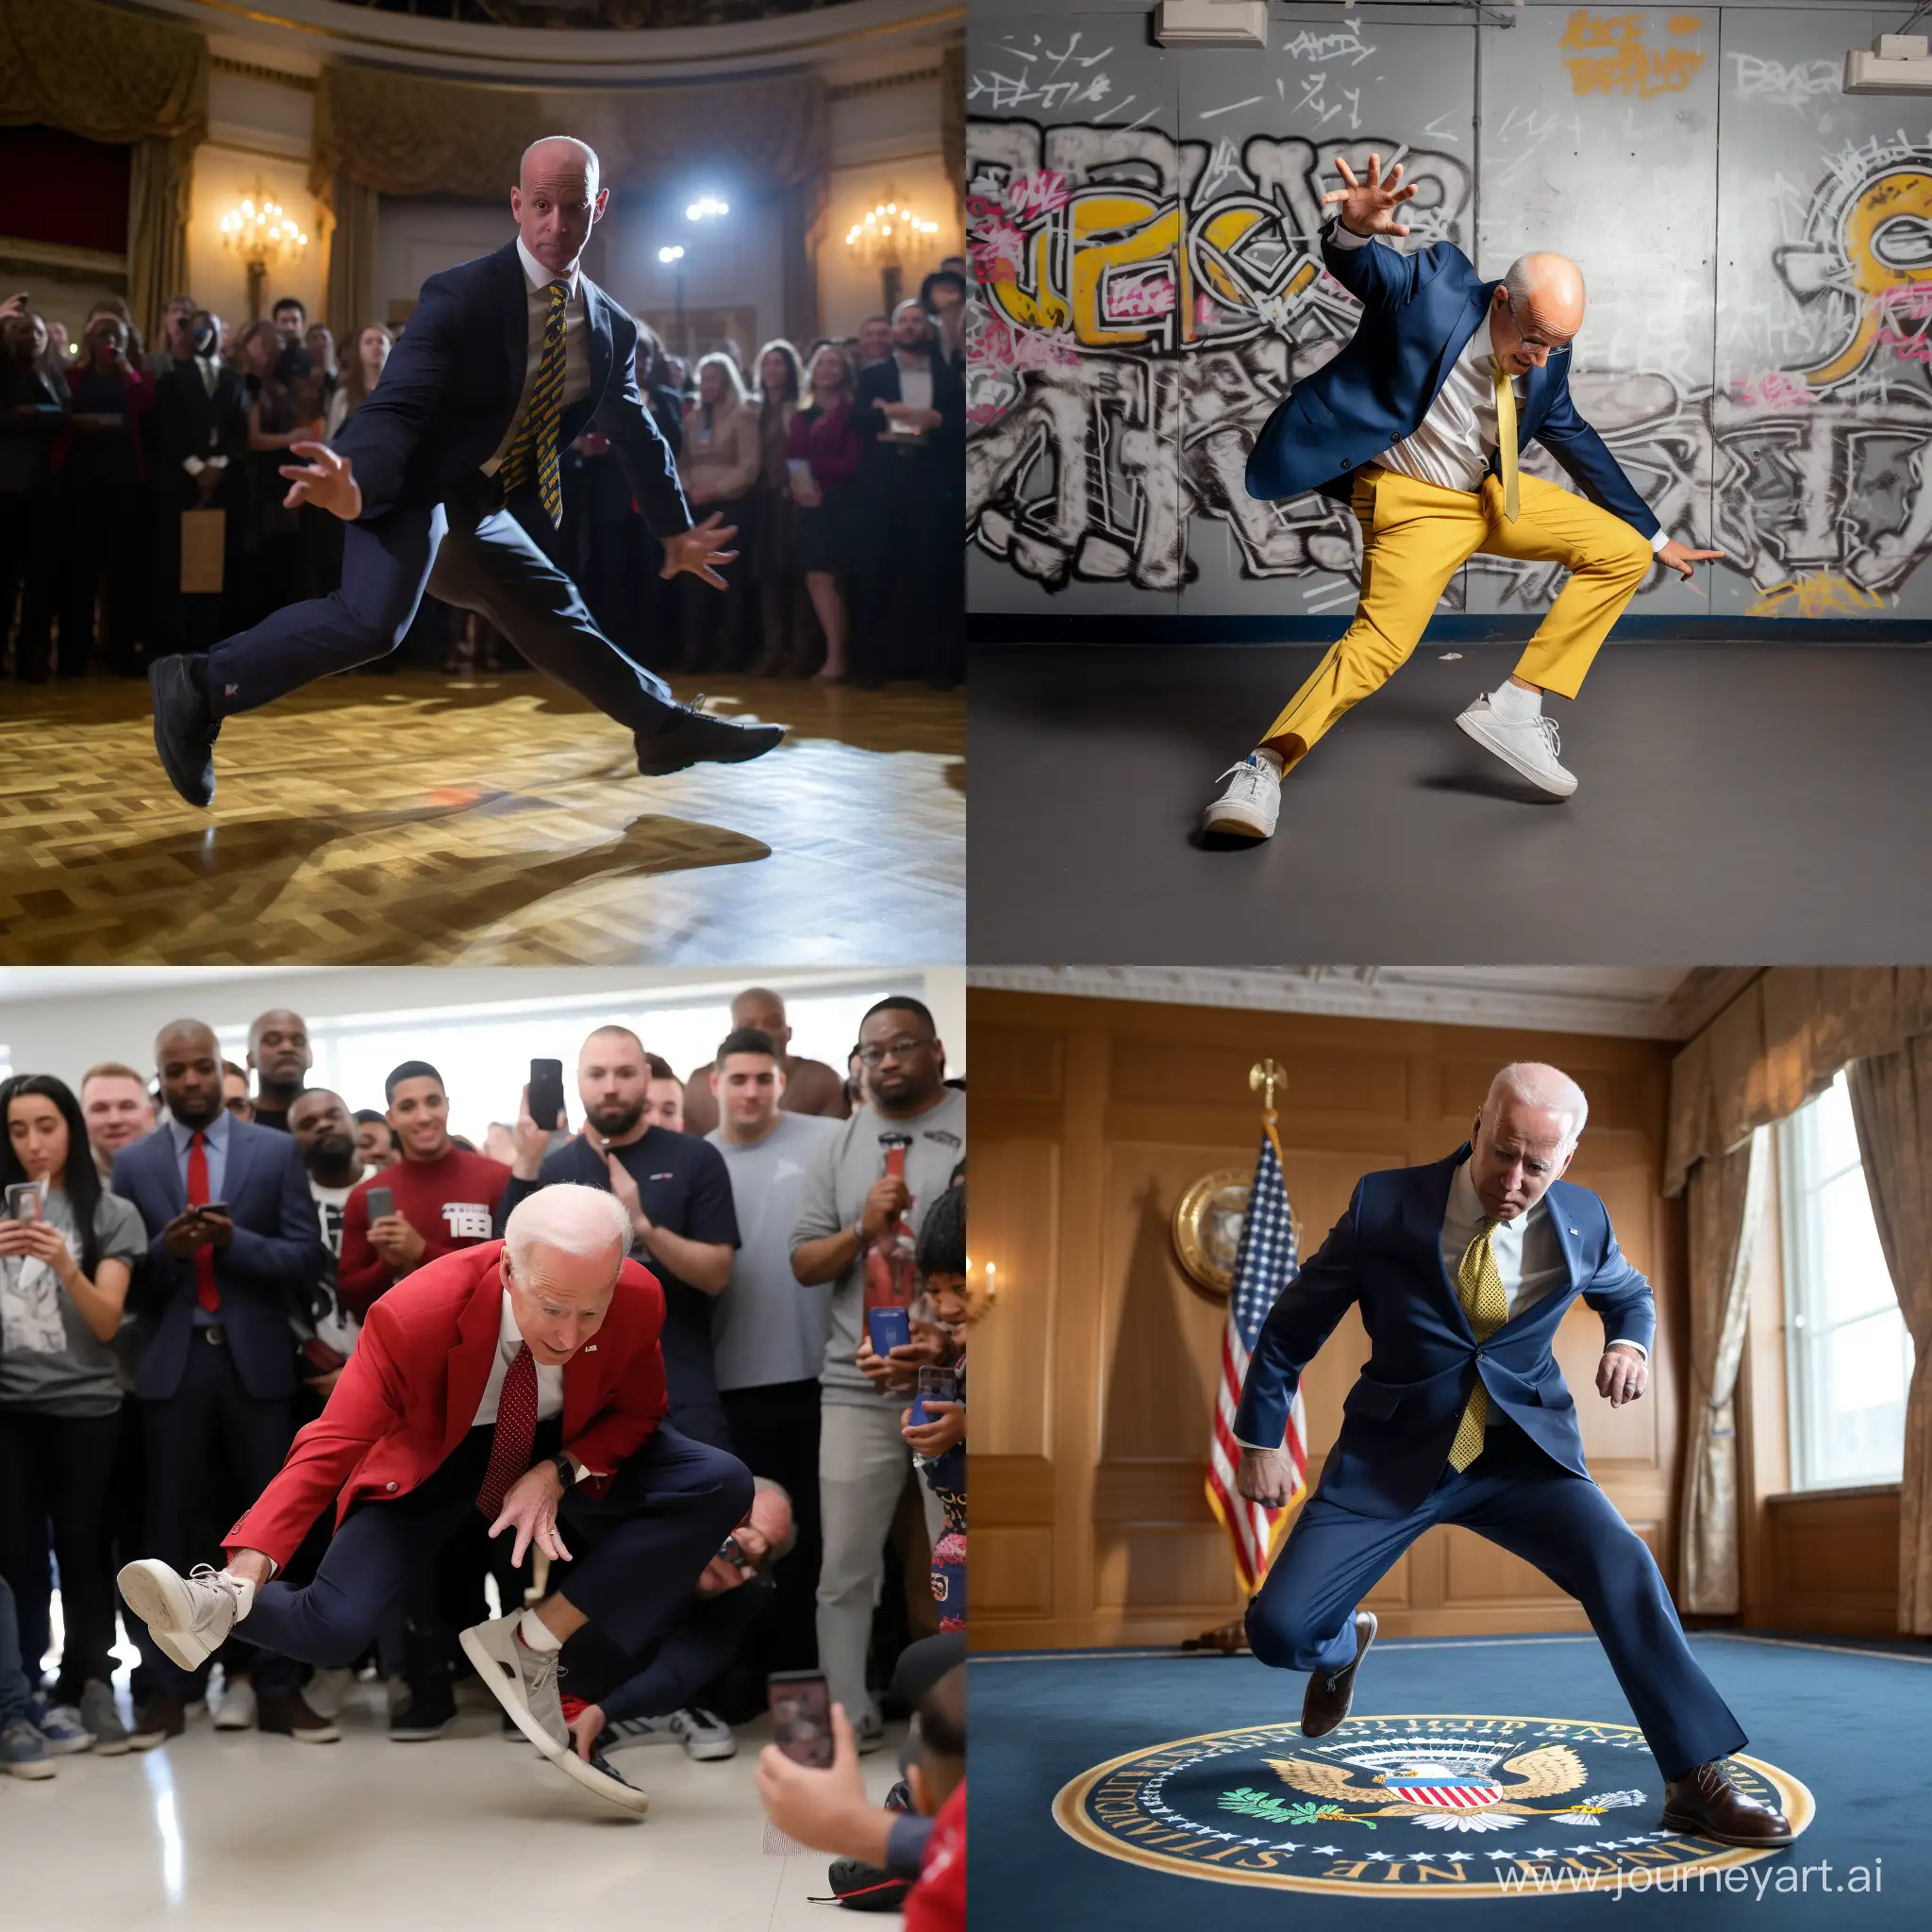 Joe-Biden-Break-Dancing-Energetic-Presidential-Moves